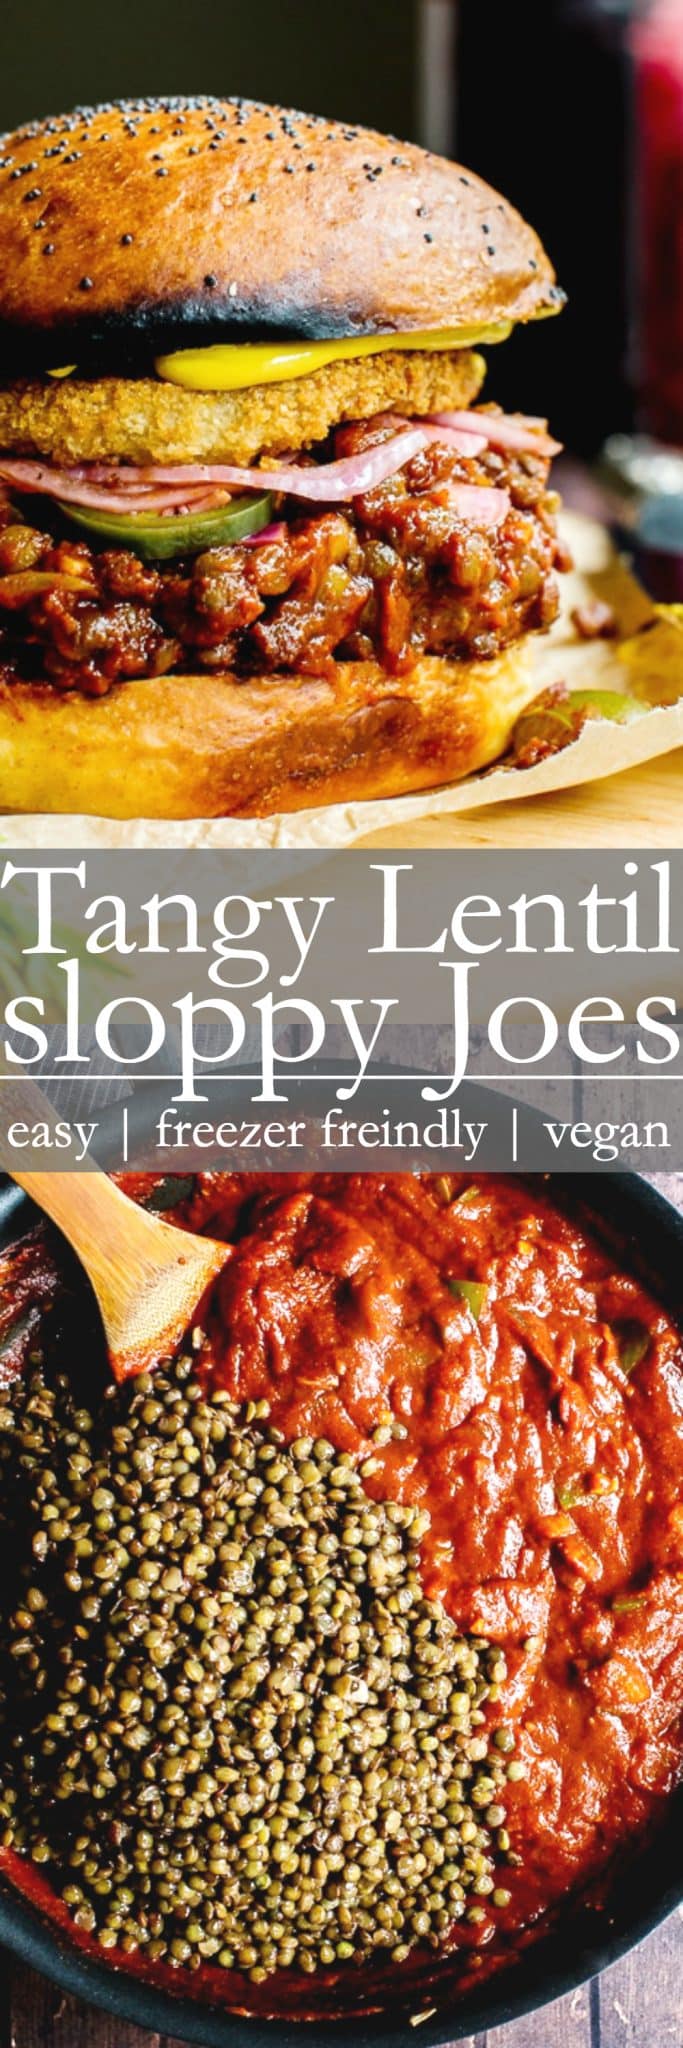 Pinterest pin for tangy lentil sloppy joes. 